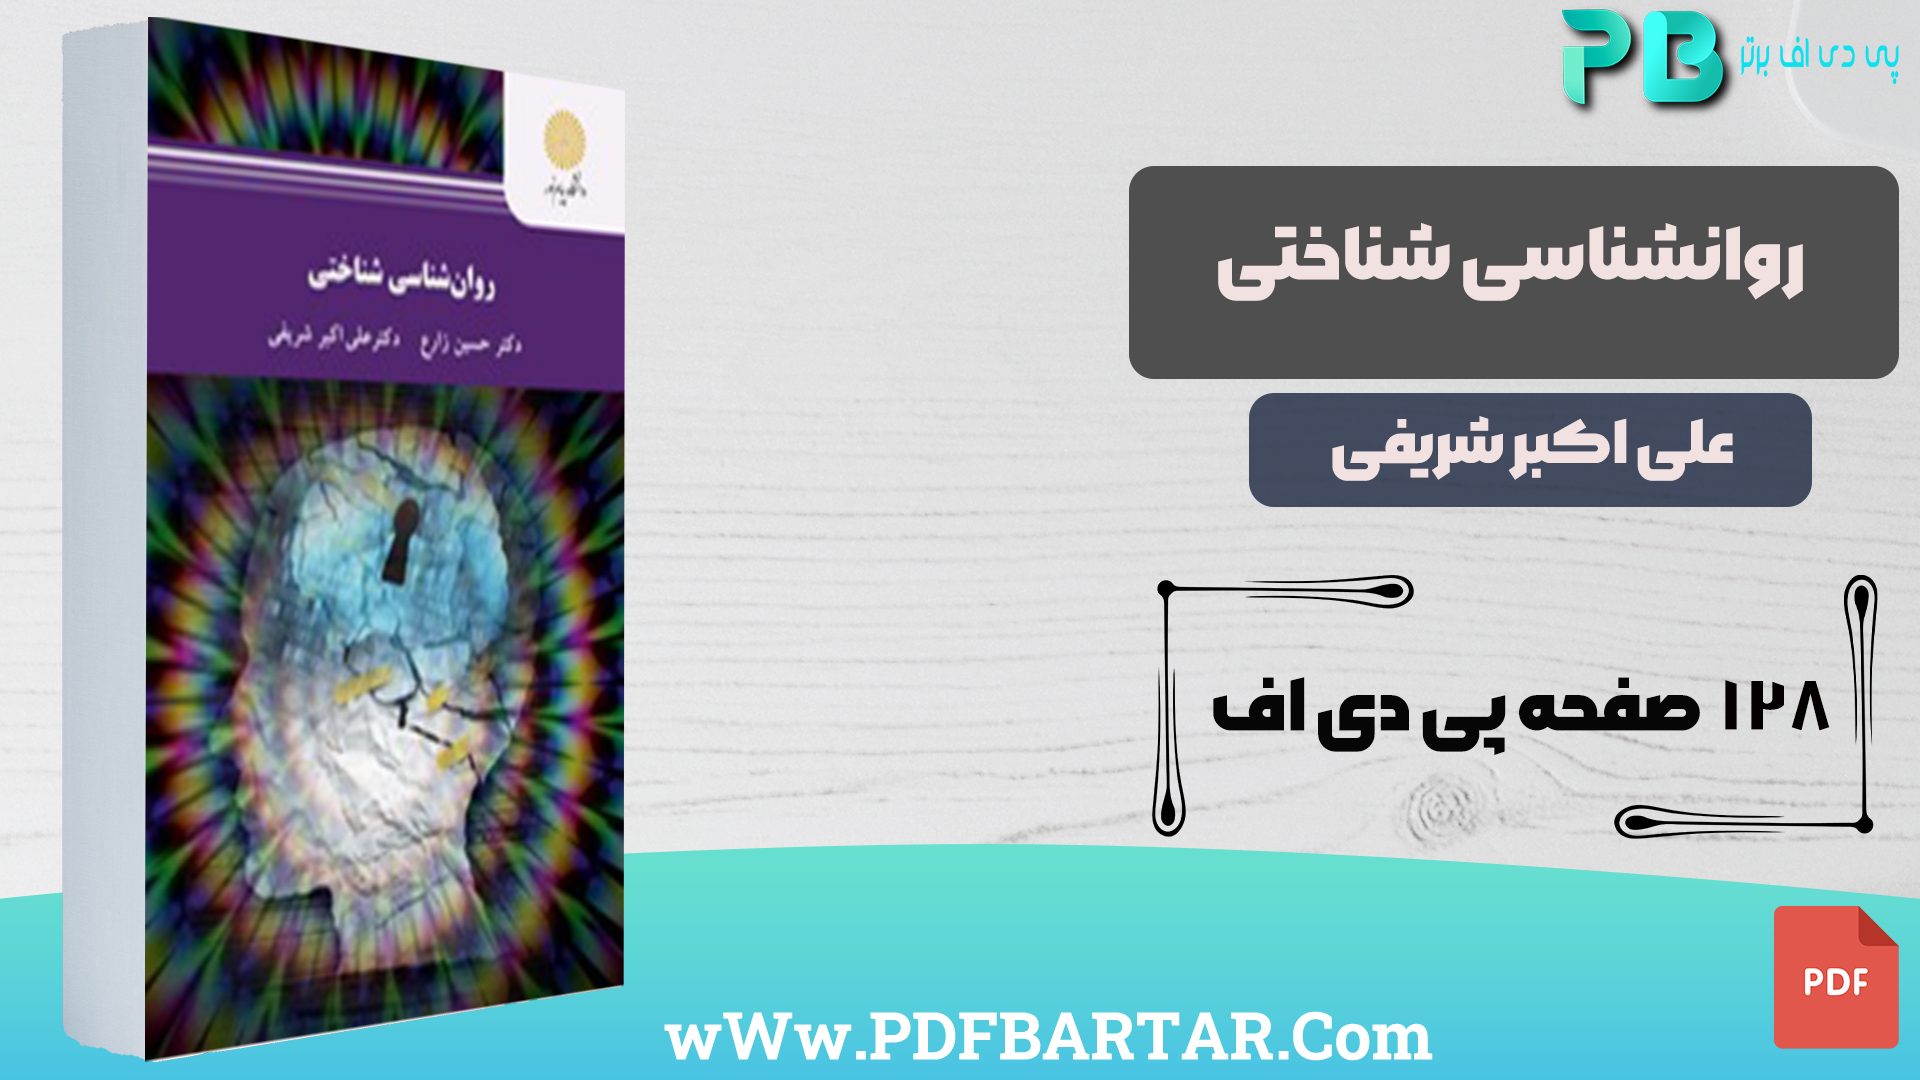 دانلود پی دی اف کتاب روانشناسی شناختی علی اکبر شریفی PDF - پی دی اف برتر